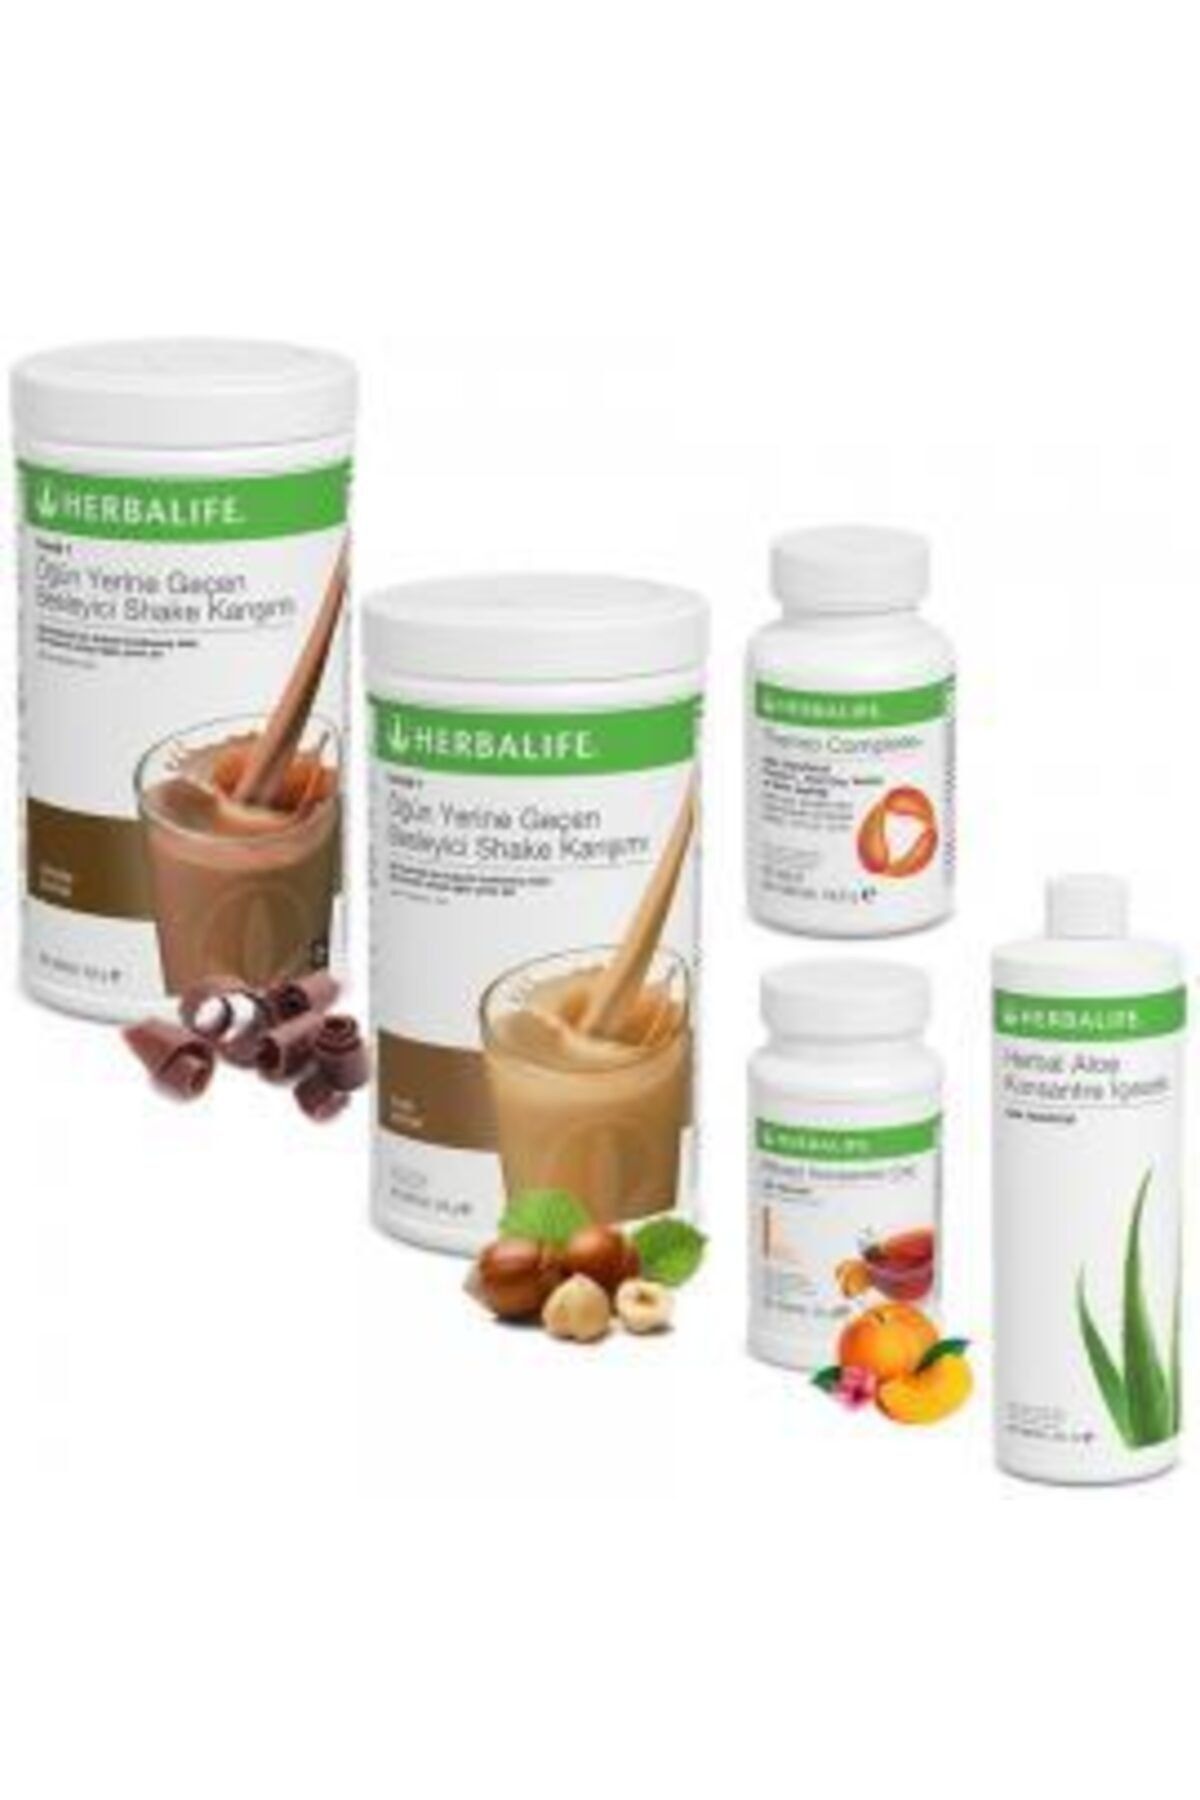 Herbalife Formül 1 Çikolatalı Ve Fındıklı Shake , Aloe Vera Suyu , Şeftali Aromalı Çay 50 Ml ,thermo Complete